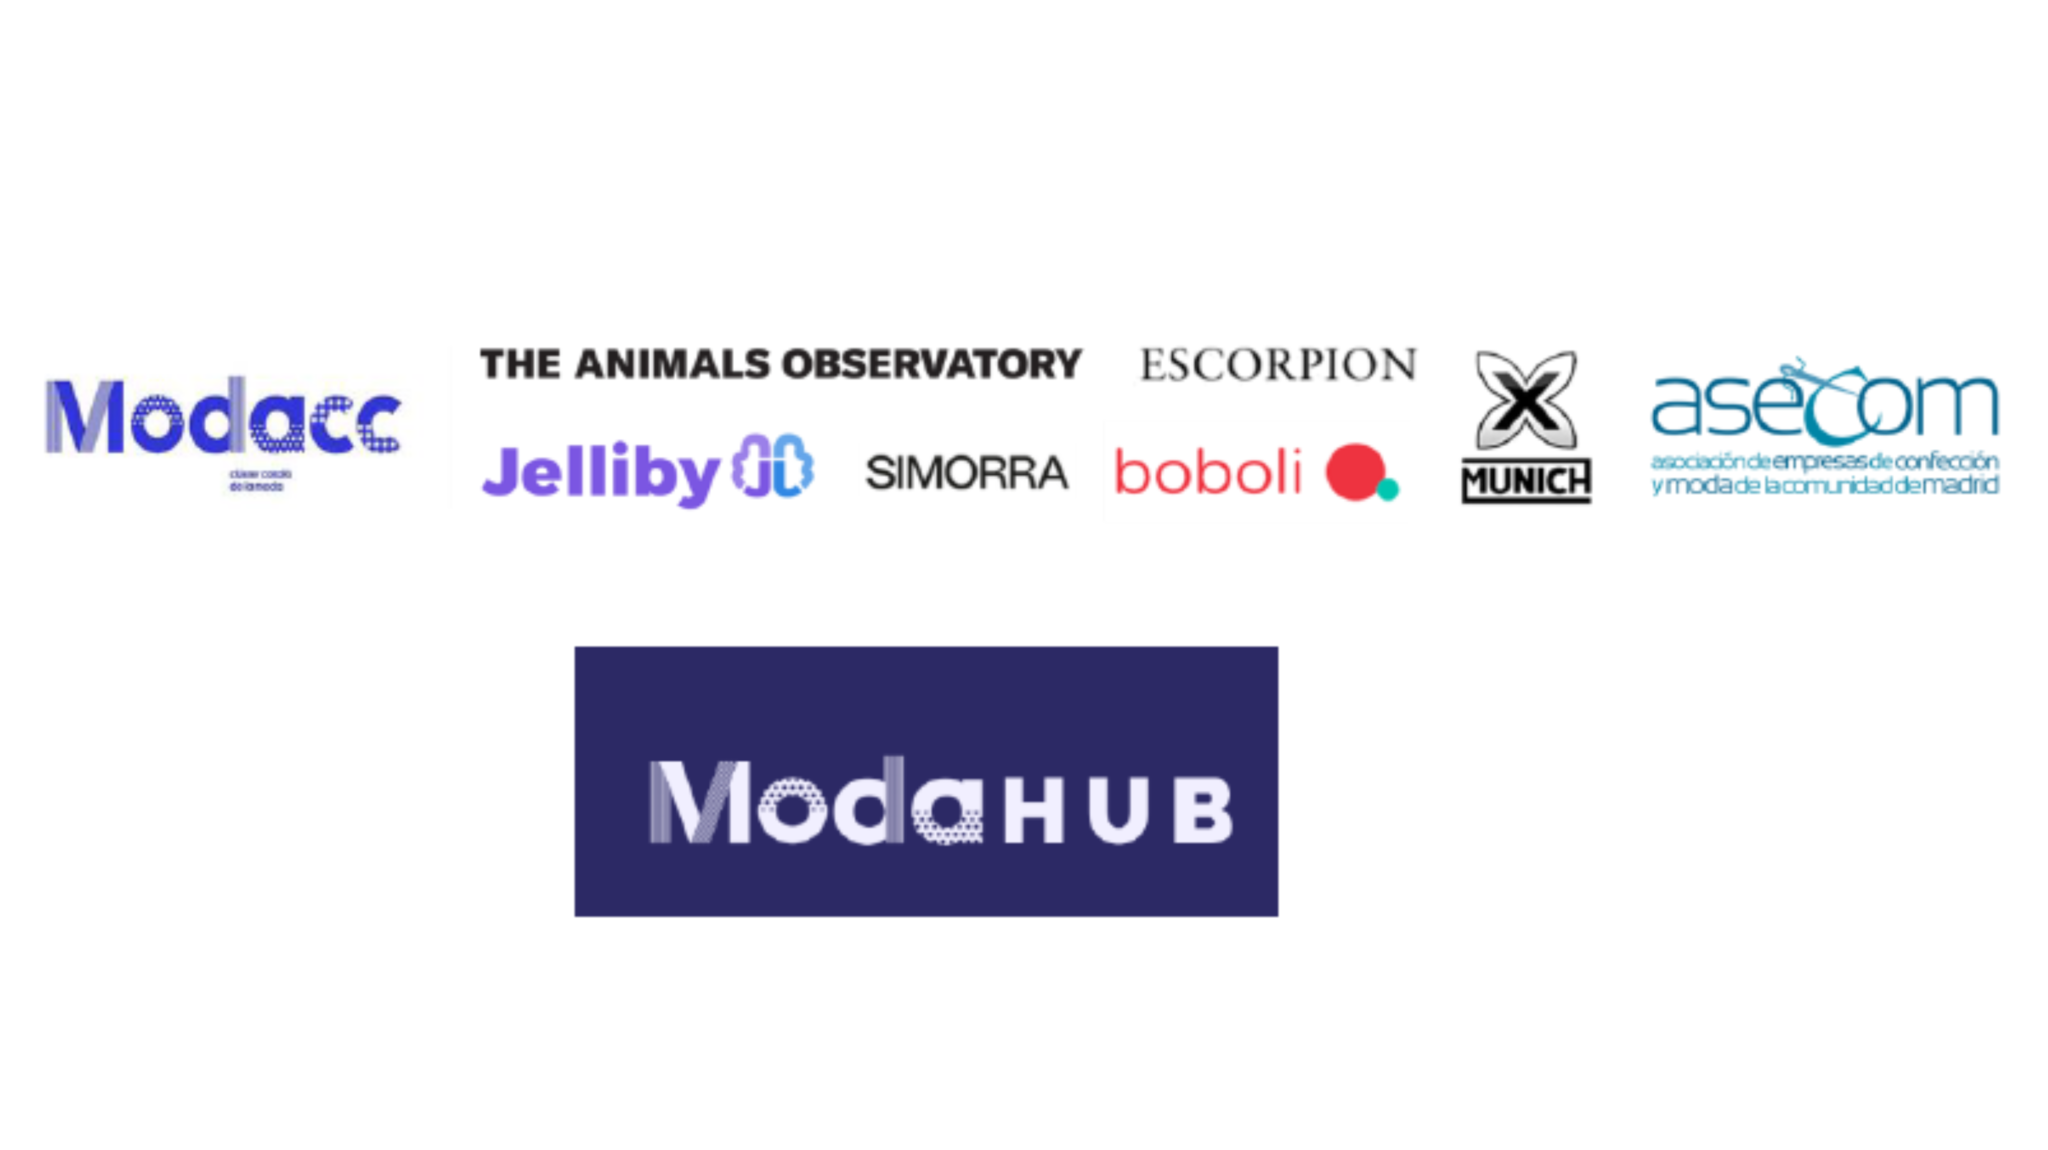 Modacc y Asecom promueven la jornada Potencia tu e-commerce con Moda Hub